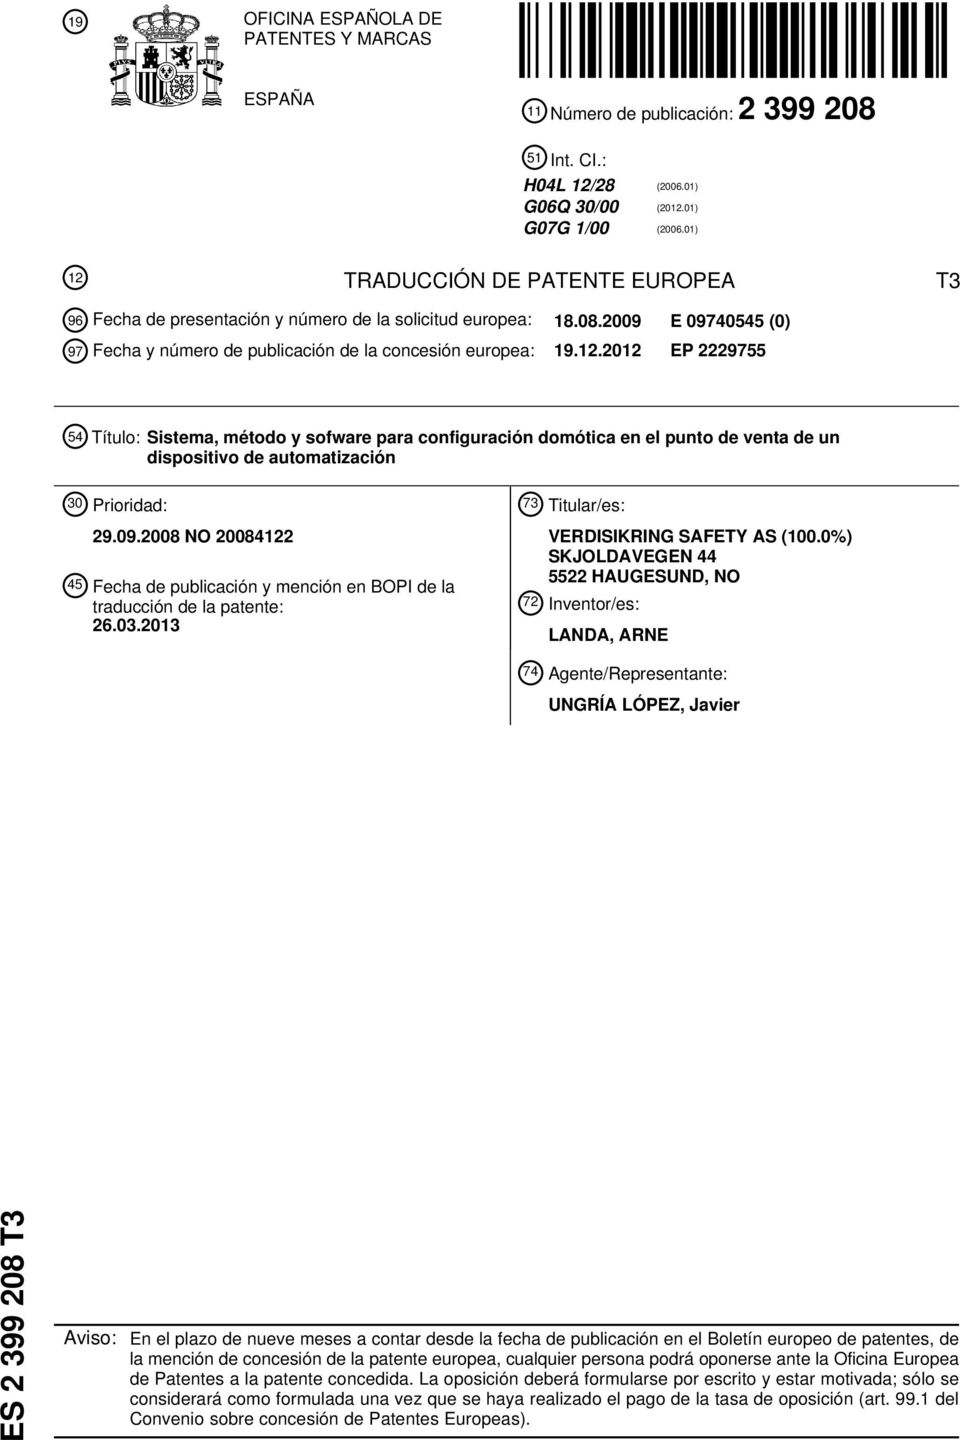 09.08 NO 084122 4 Fecha de publicación y mención en BOPI de la traducción de la patente: 26.03.13 73 Titular/es: VERDISIKRING SAFETY AS (0.